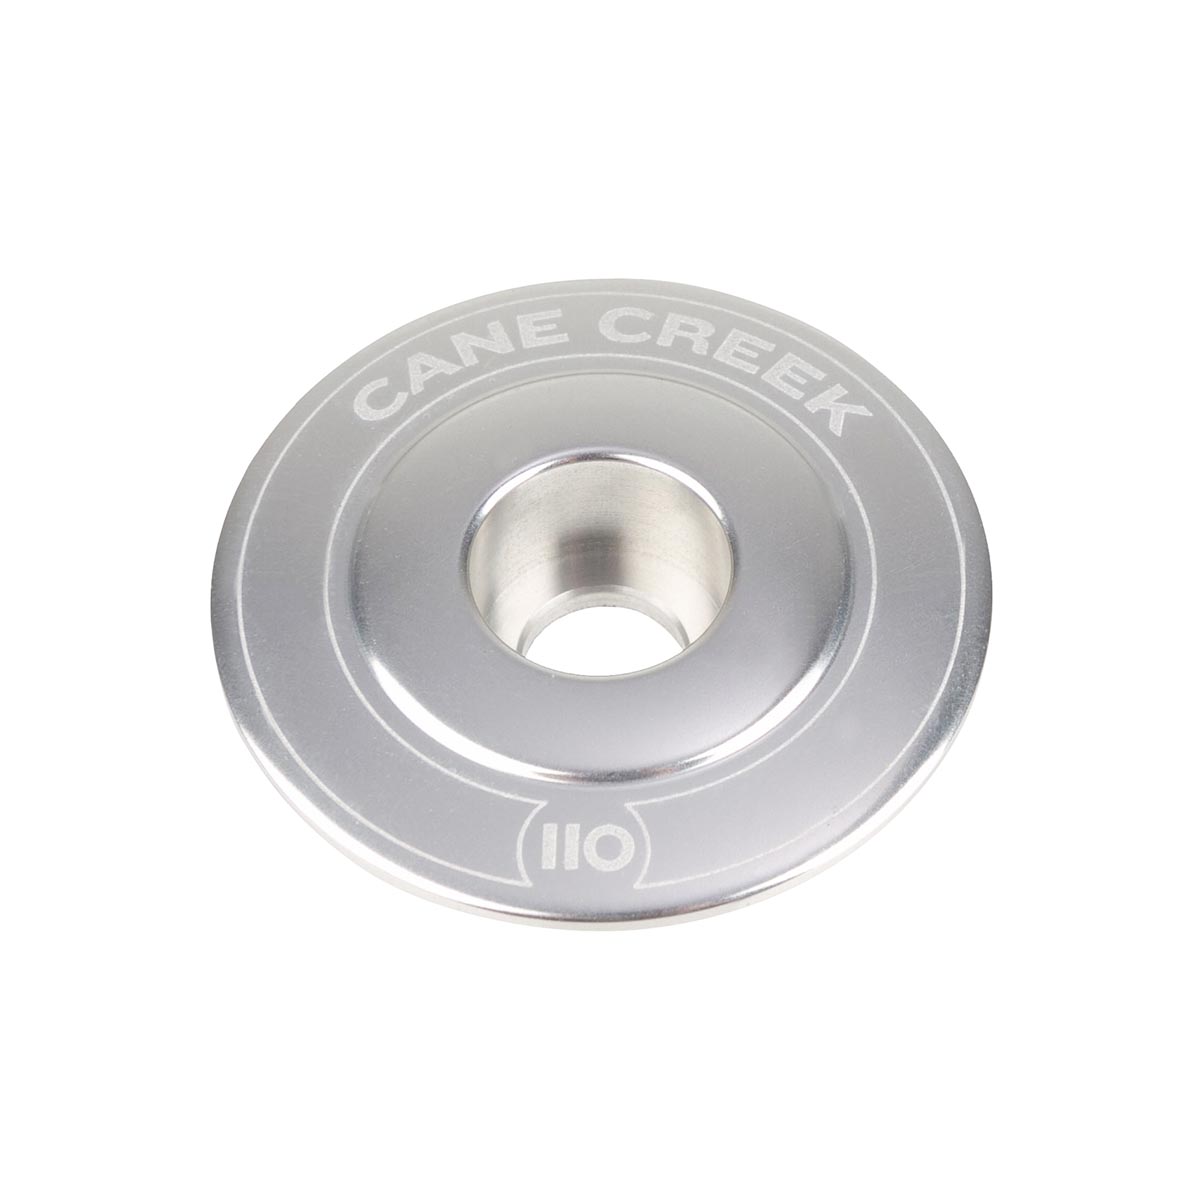 Cane Creek Ahead Cap 110 Silver, Aluminium, 1 1/8 Inches